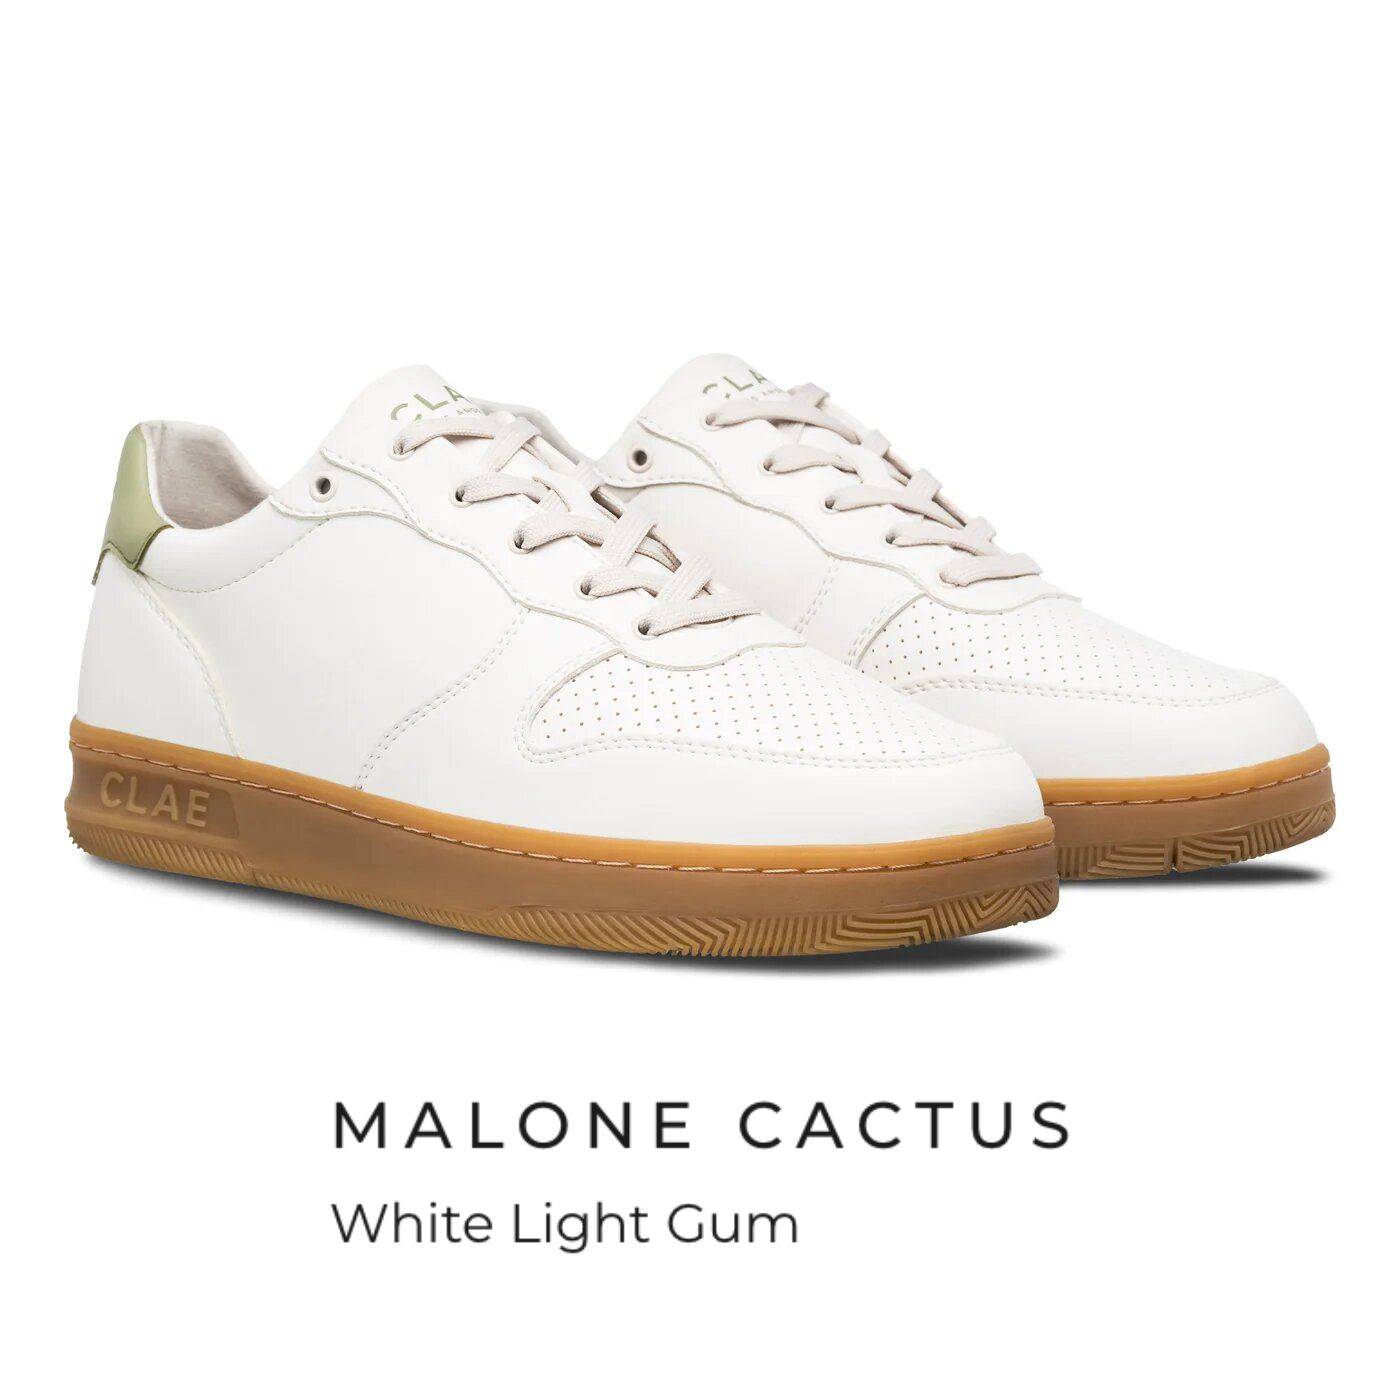 malone cactus white light gum